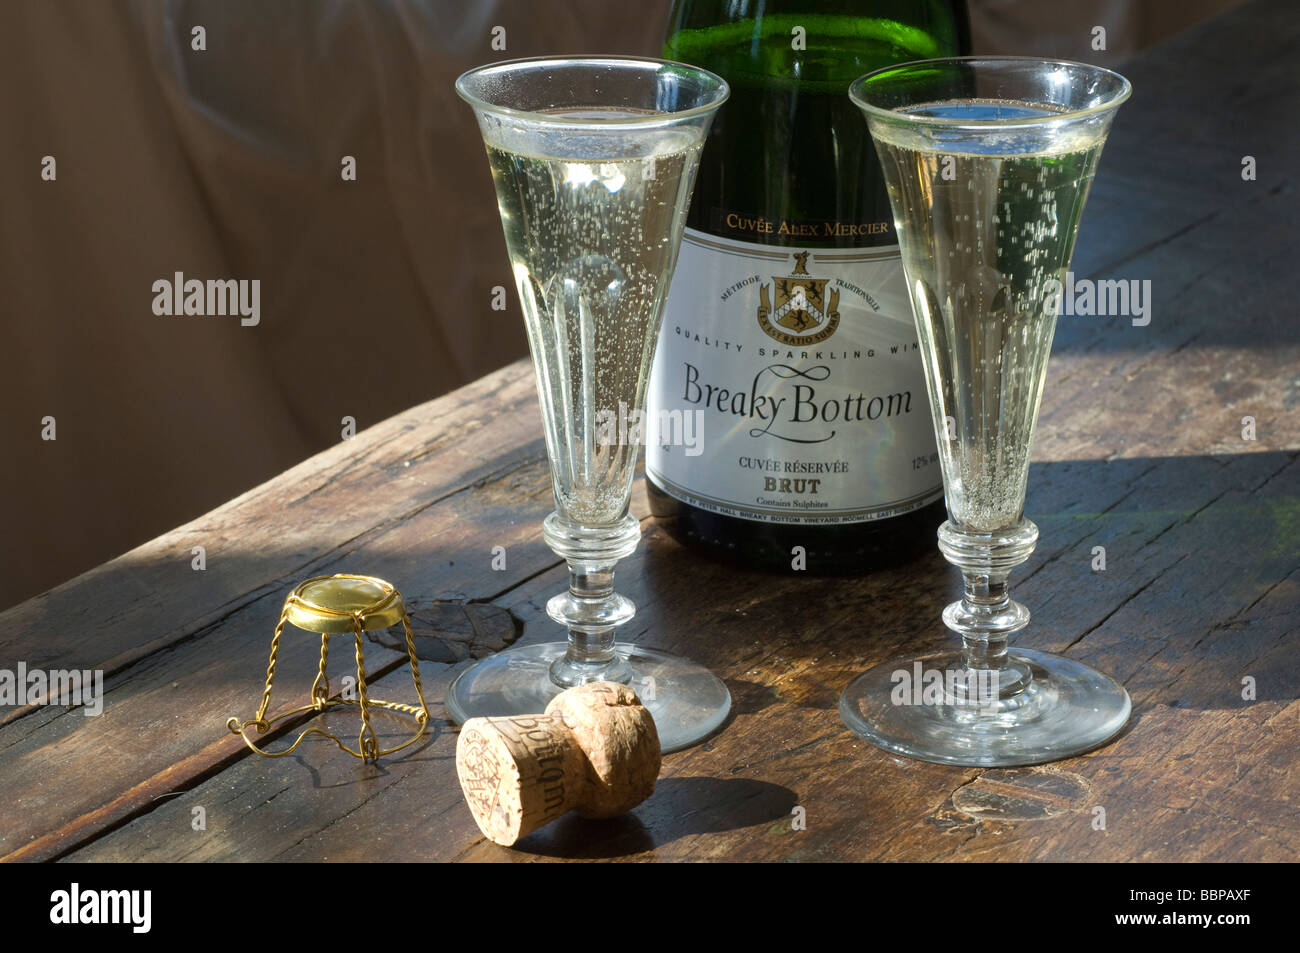 Stile Champagne vino spumante dal fondo Breaky vigneto, Rodmell, nei pressi di Lewes, nel Sussex, Inghilterra, Regno Unito Gran Bretagna Foto Stock